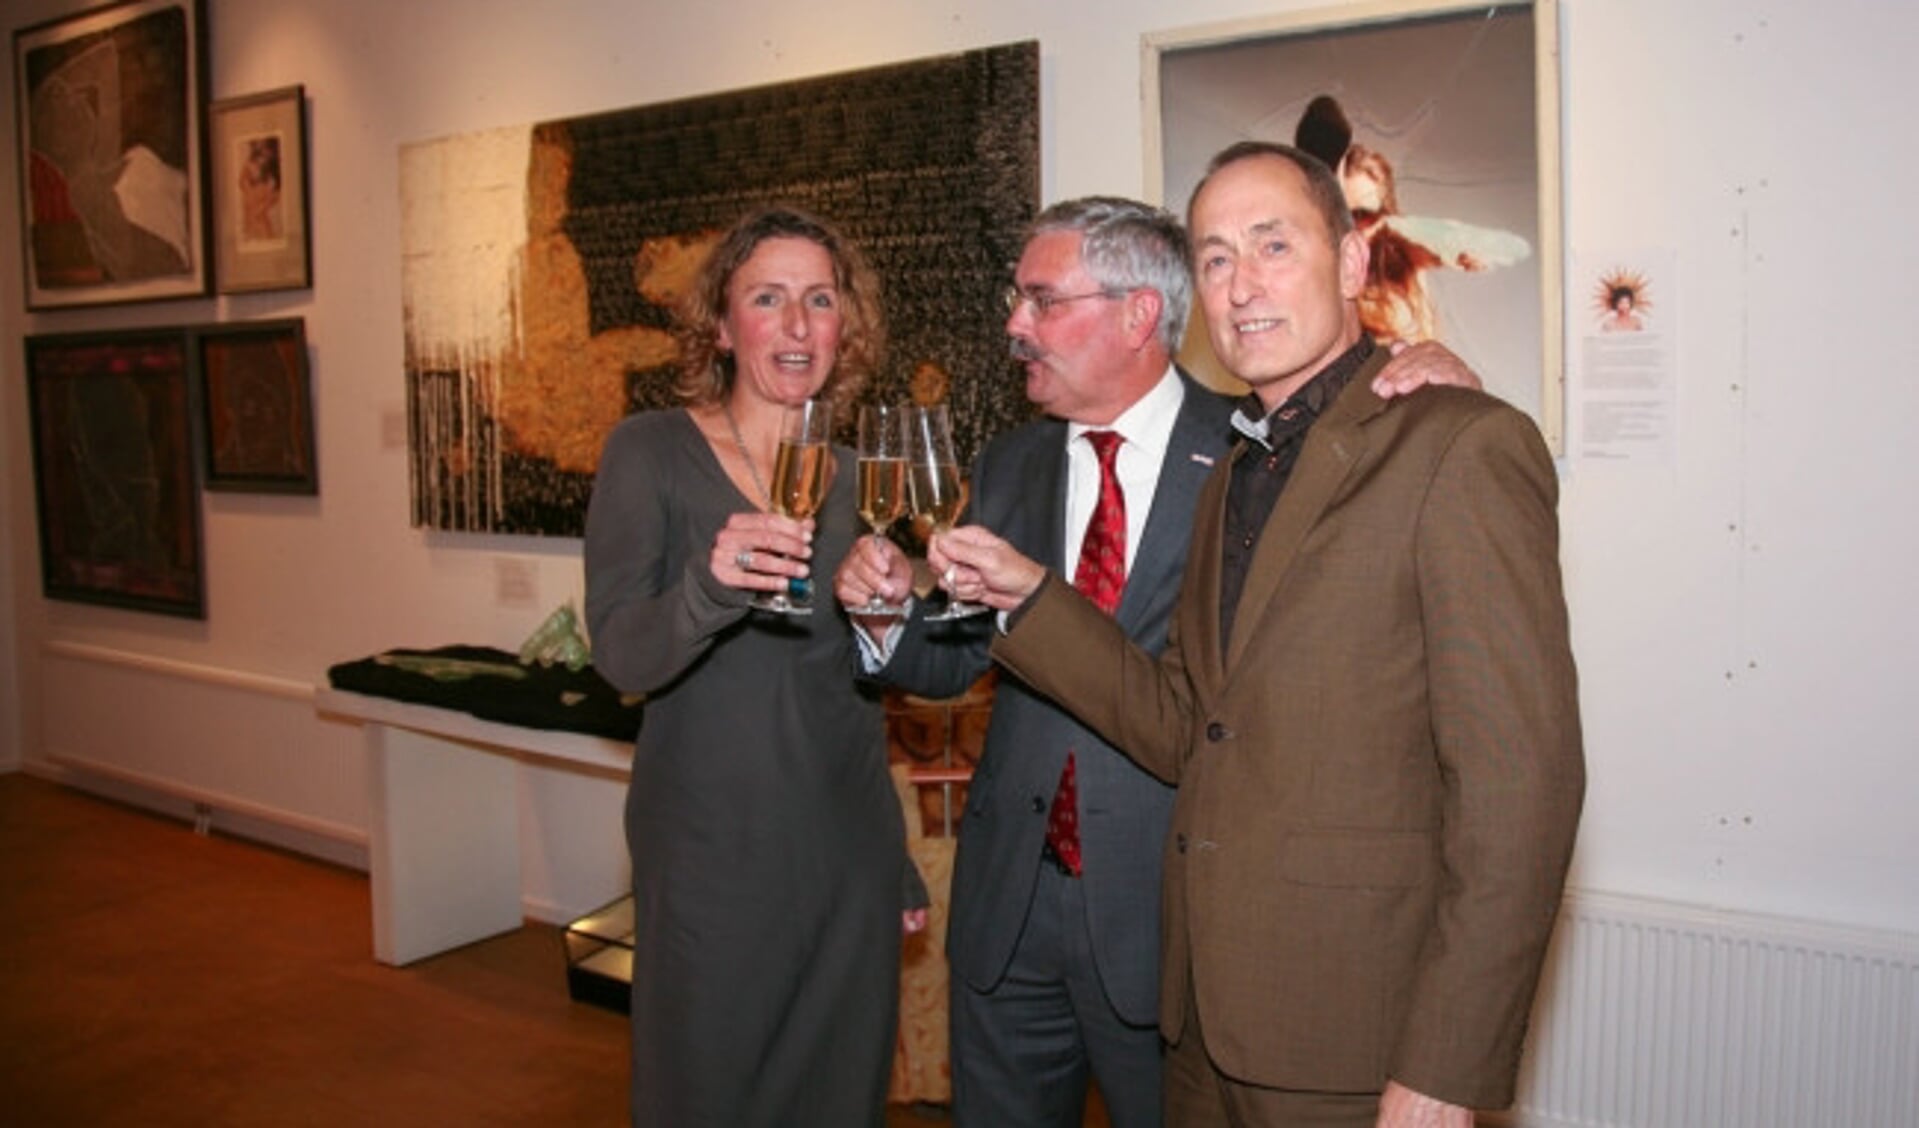  Burgemeester Aat de Jonge (midden) met de eigenaars Caroline Bik en Wim Schoonhoven